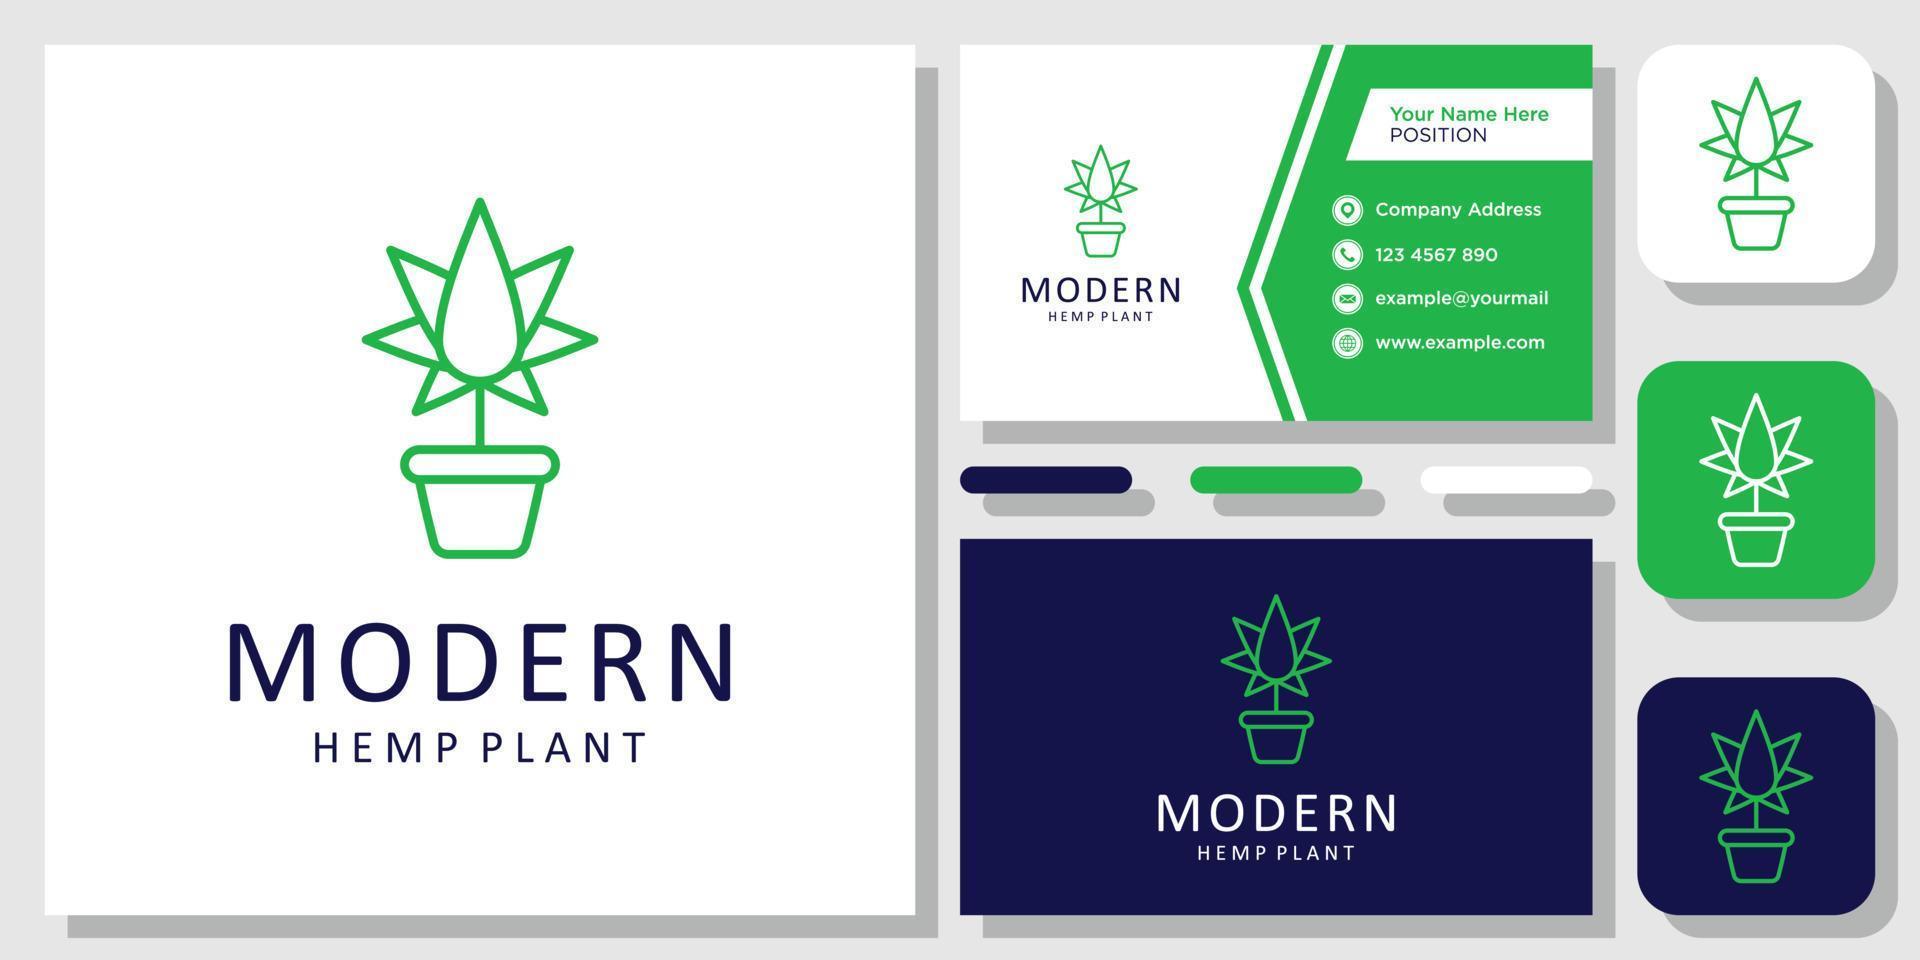 Topfhanfpflanze Cannabisdroge Bio-Blattgras-Logo-Design-Inspiration mit Layout-Vorlagen-Visitenkarte vektor